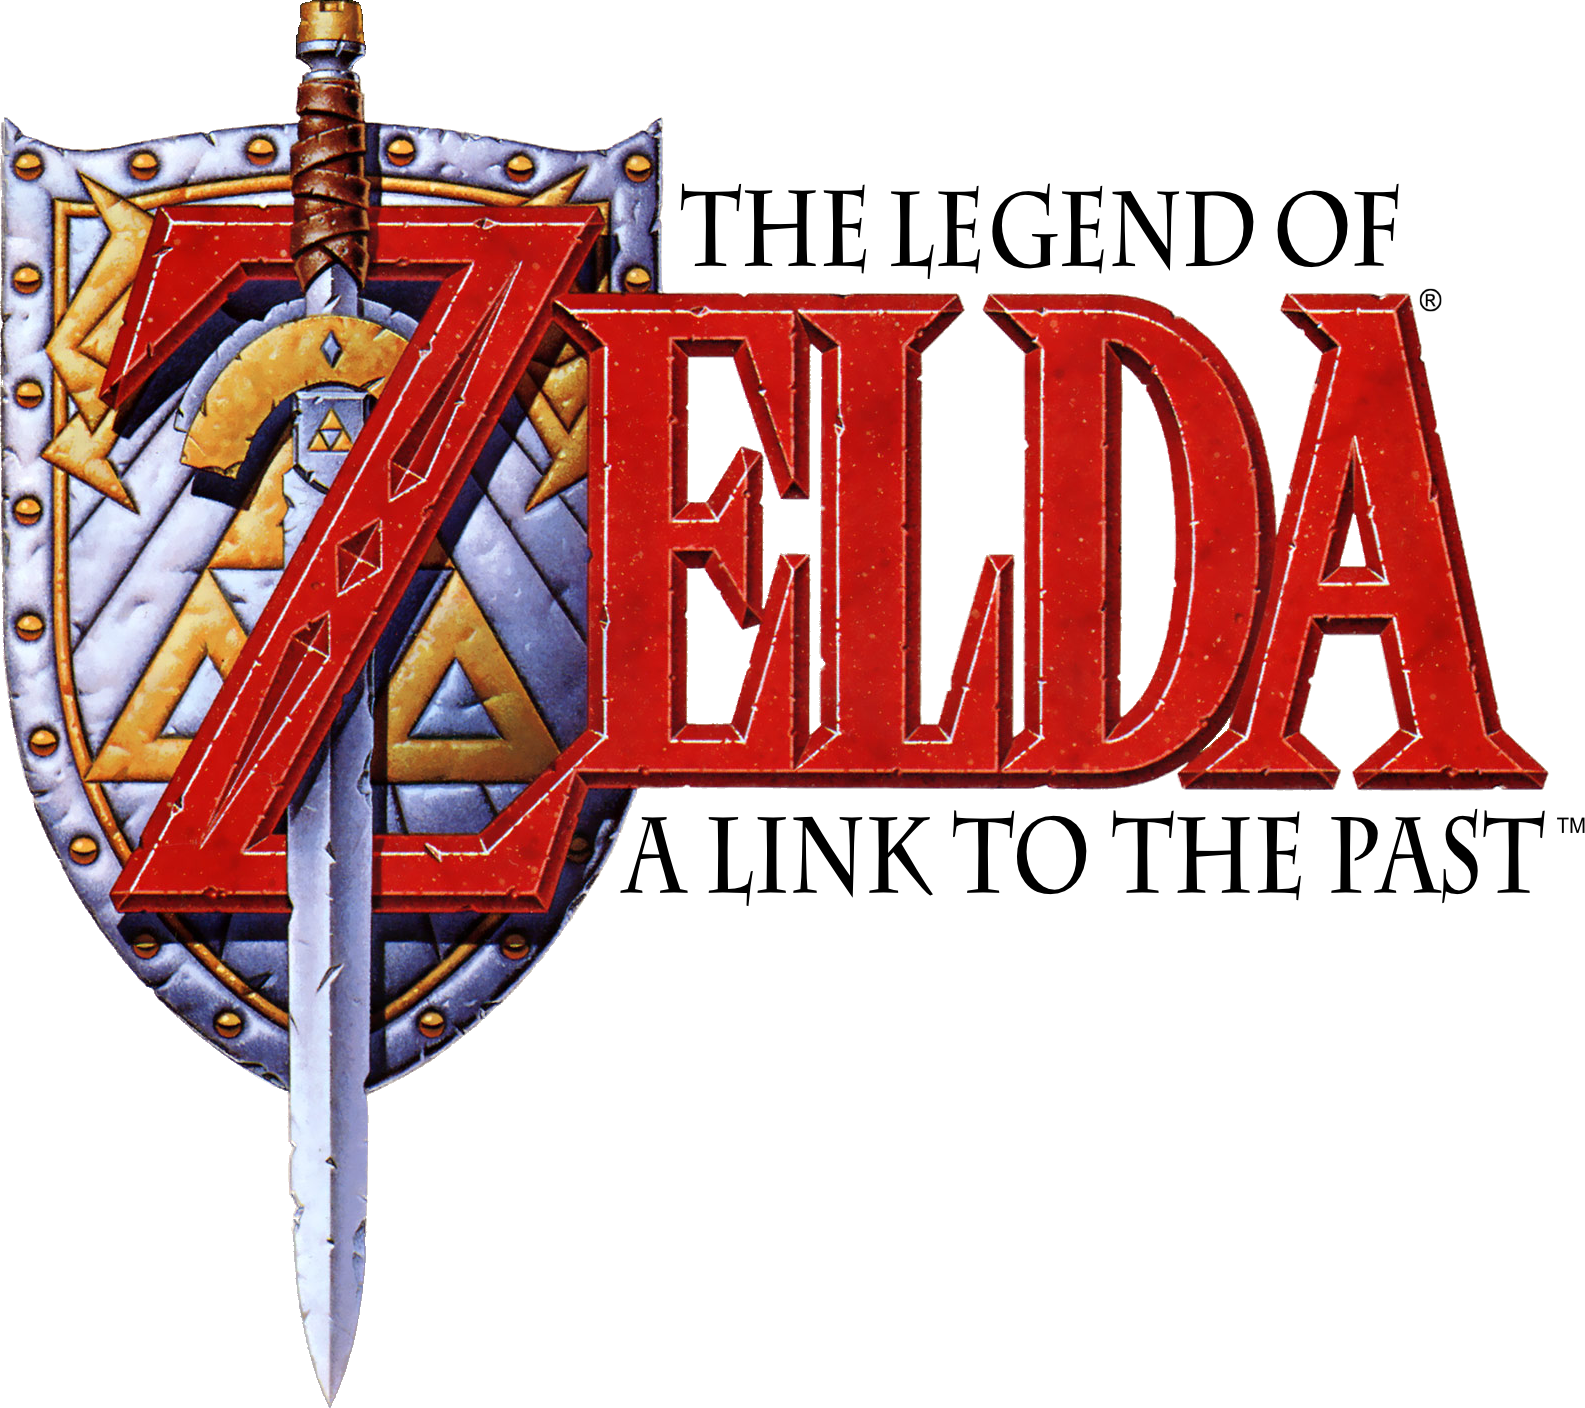 TRADUÇÃO The Legend of Zelda: Link Awakening PARA PORTUGUÊS